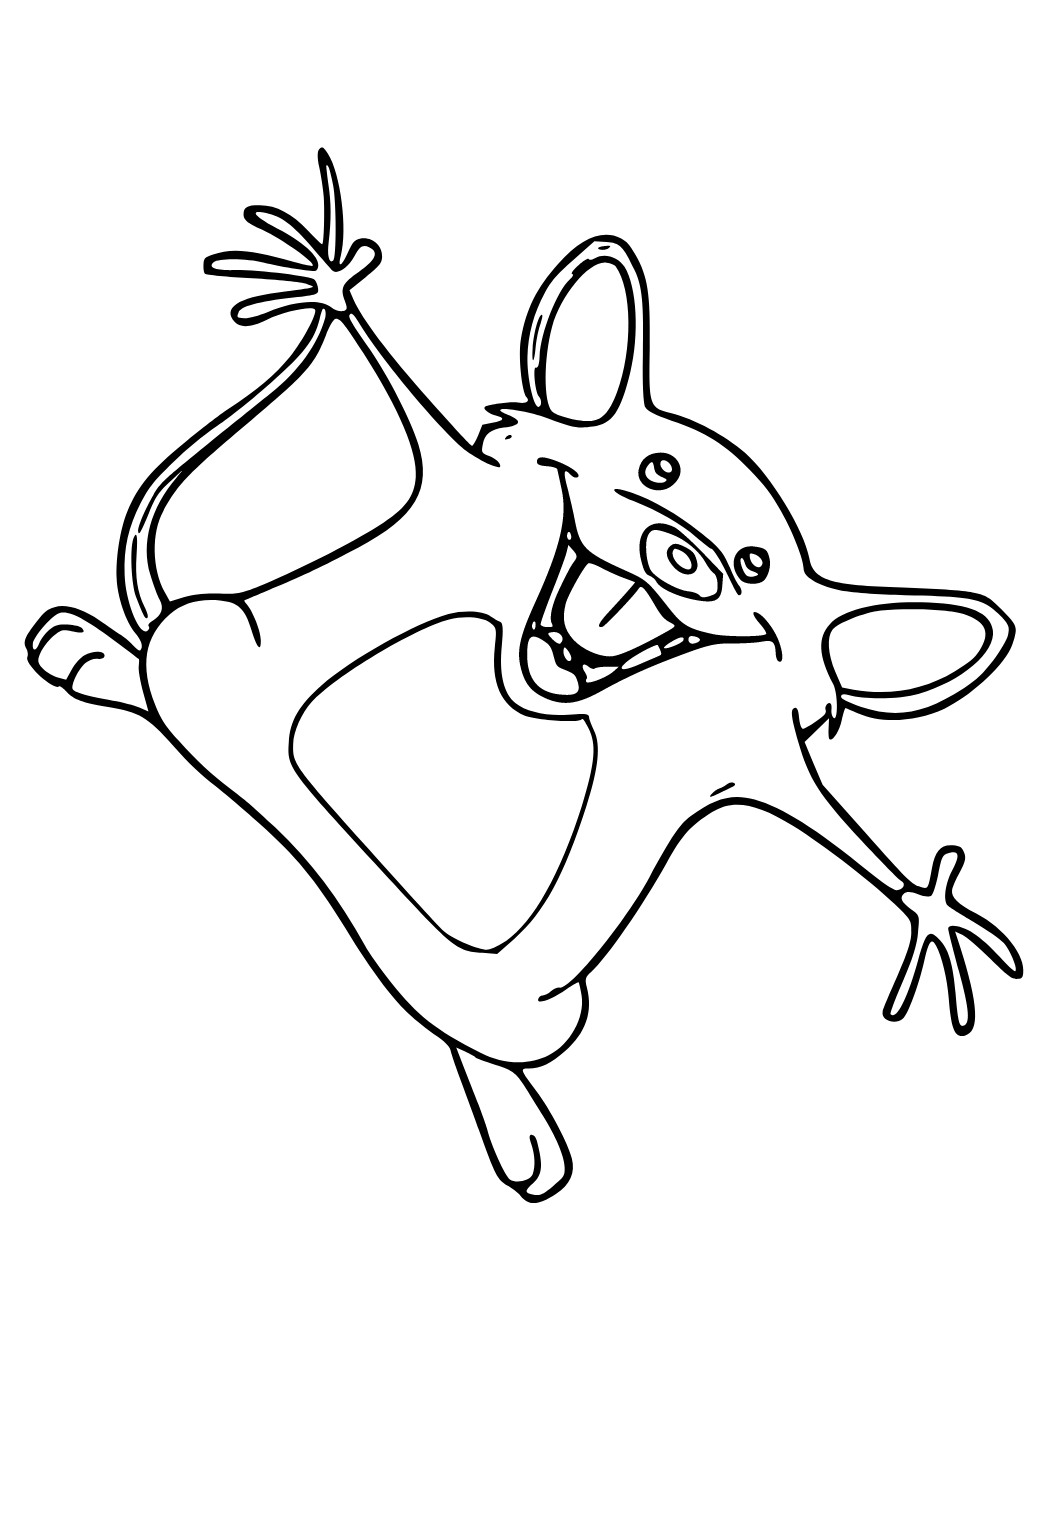 Desenhos para colorir de desenho de um rato para colorir online  